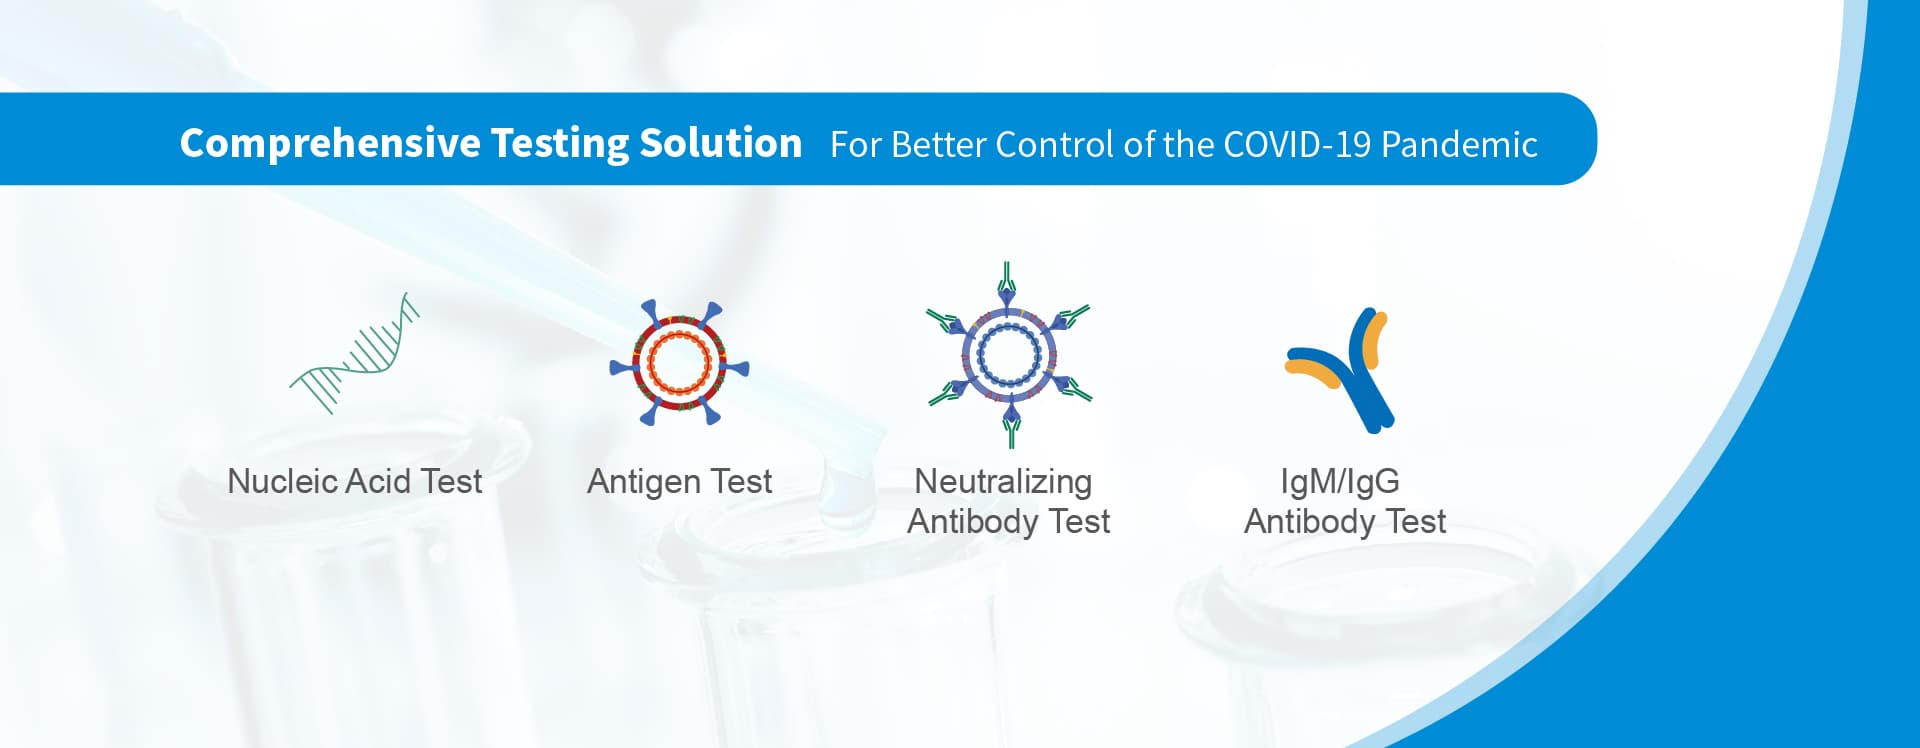 solución de prueba COVID-19
